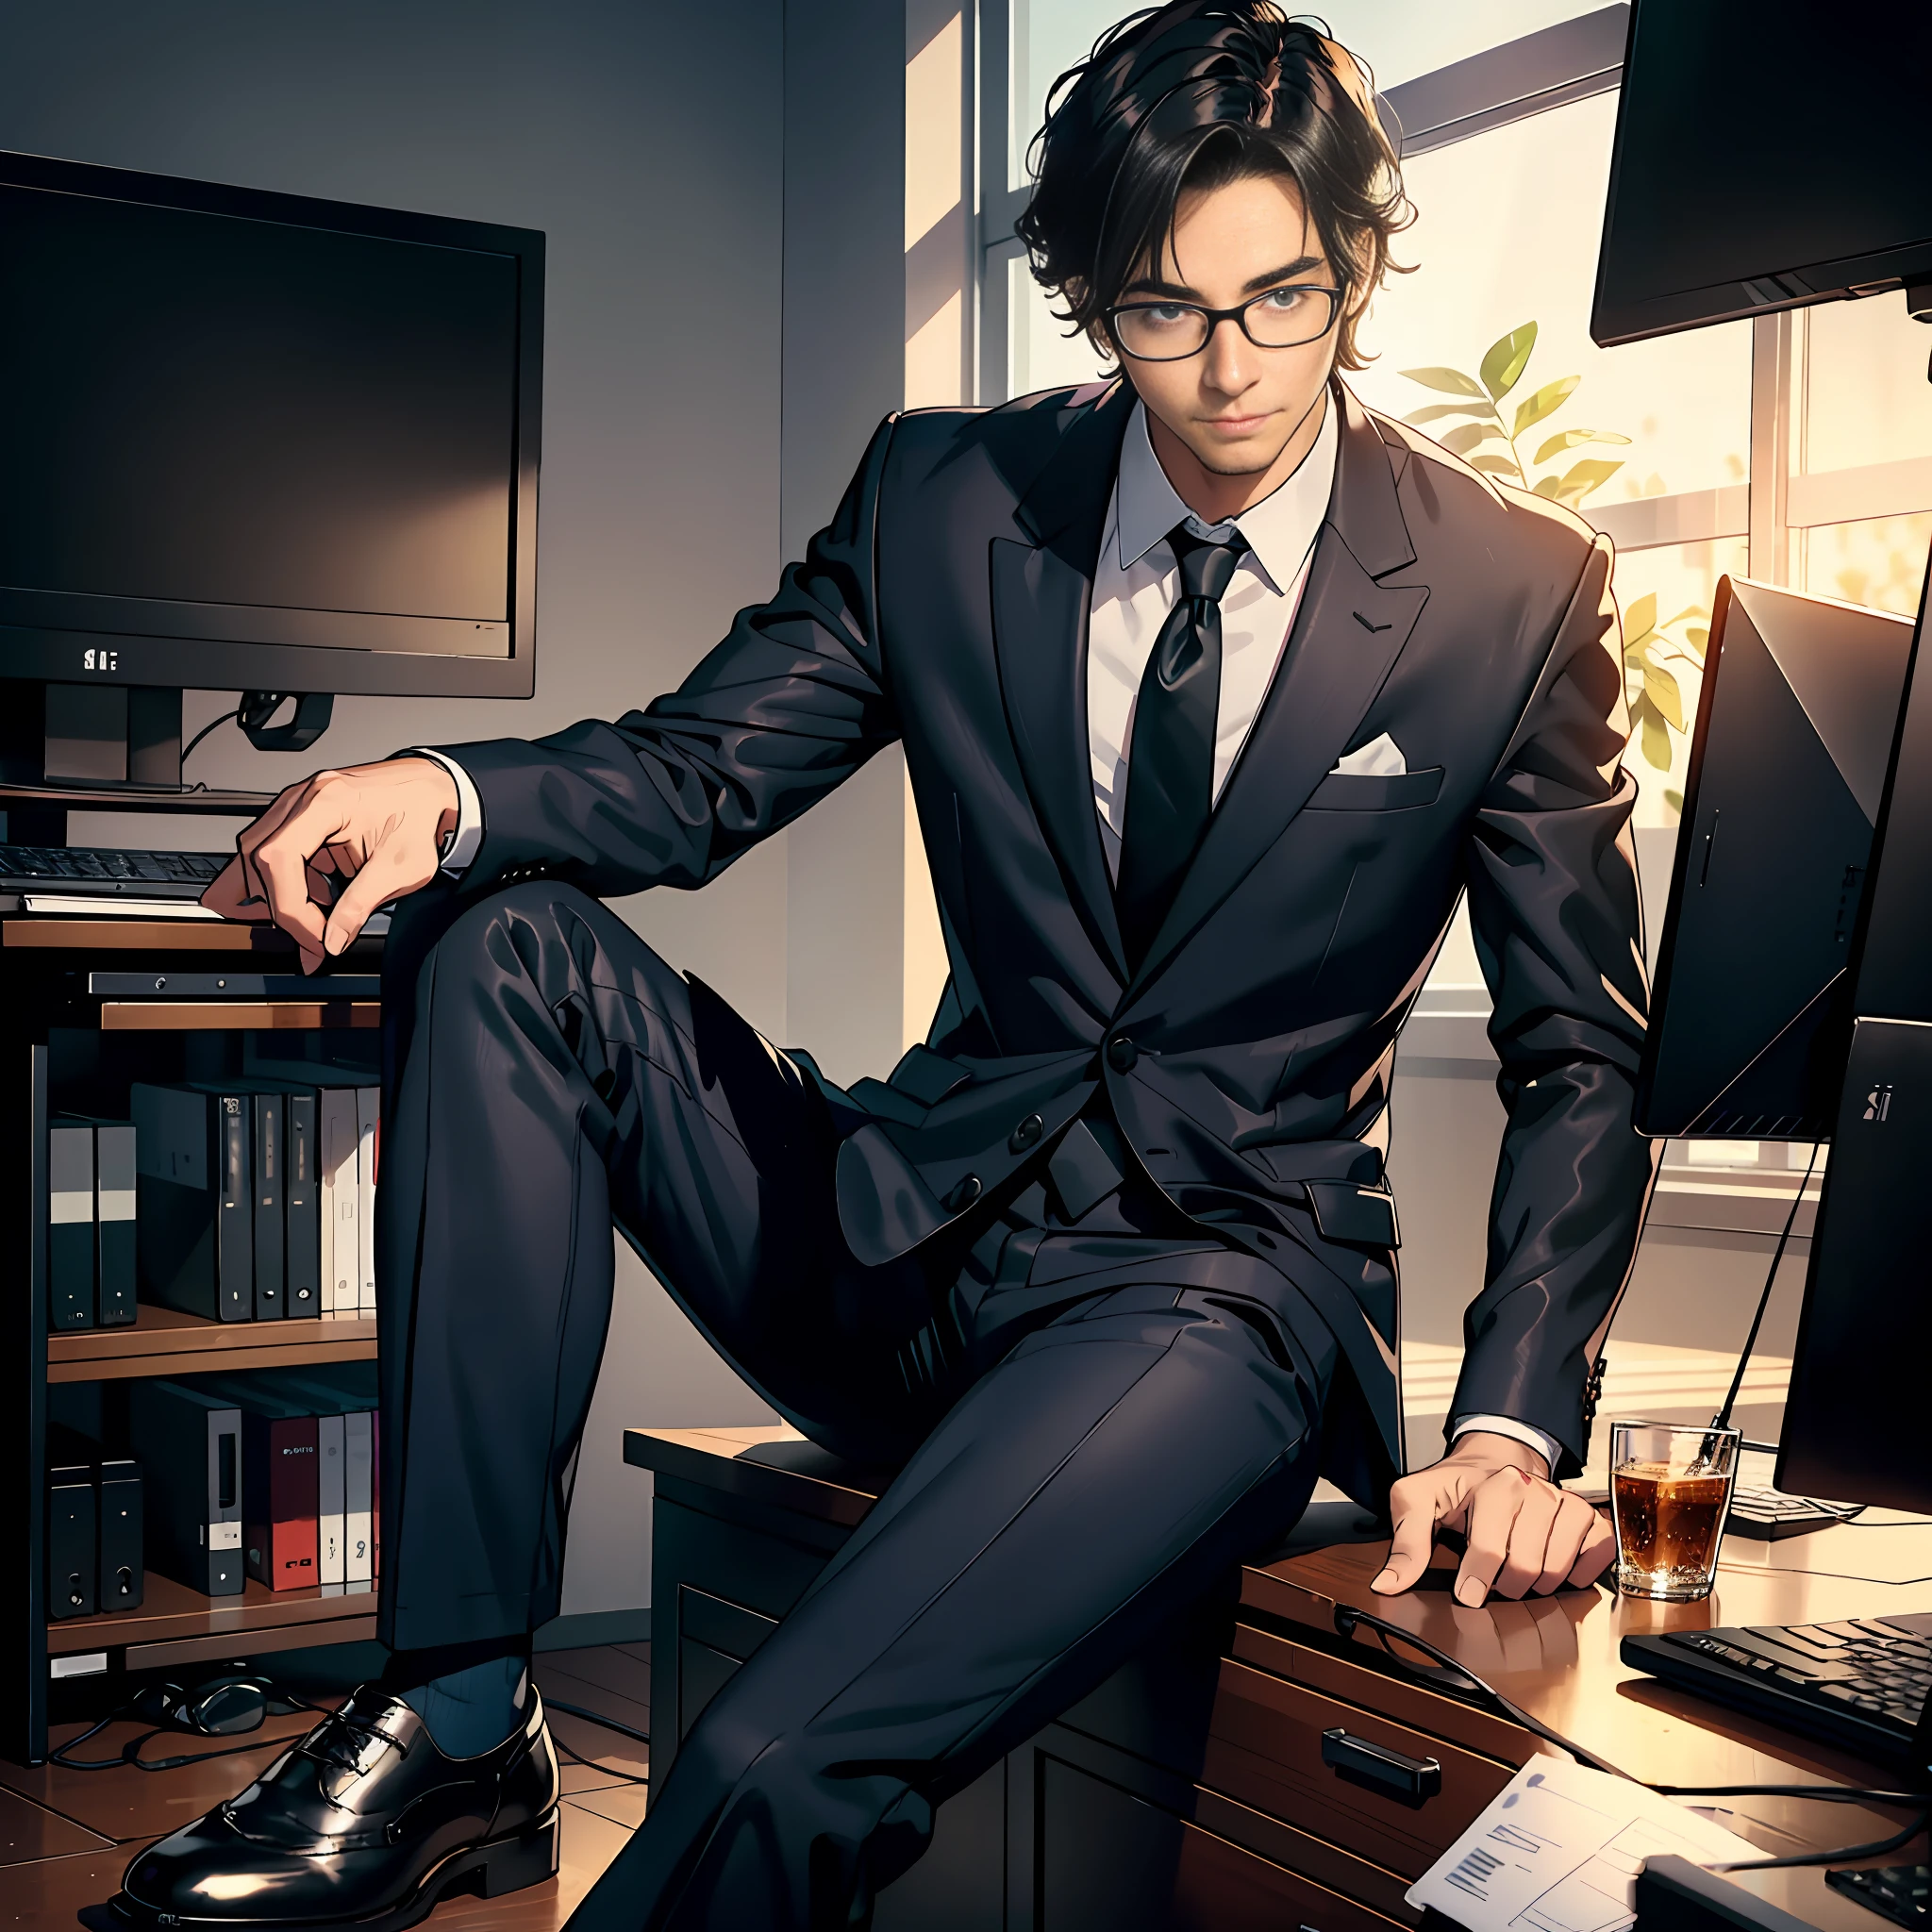 一个男人, 快樂工作, 穿著西裝和皮鞋, 坐在電腦前工作, 白天, 辦公室, 同事, 精細的臉部描寫, 精美的服裝描繪, 超高畫質, 8K, 遠景, 全身照片.